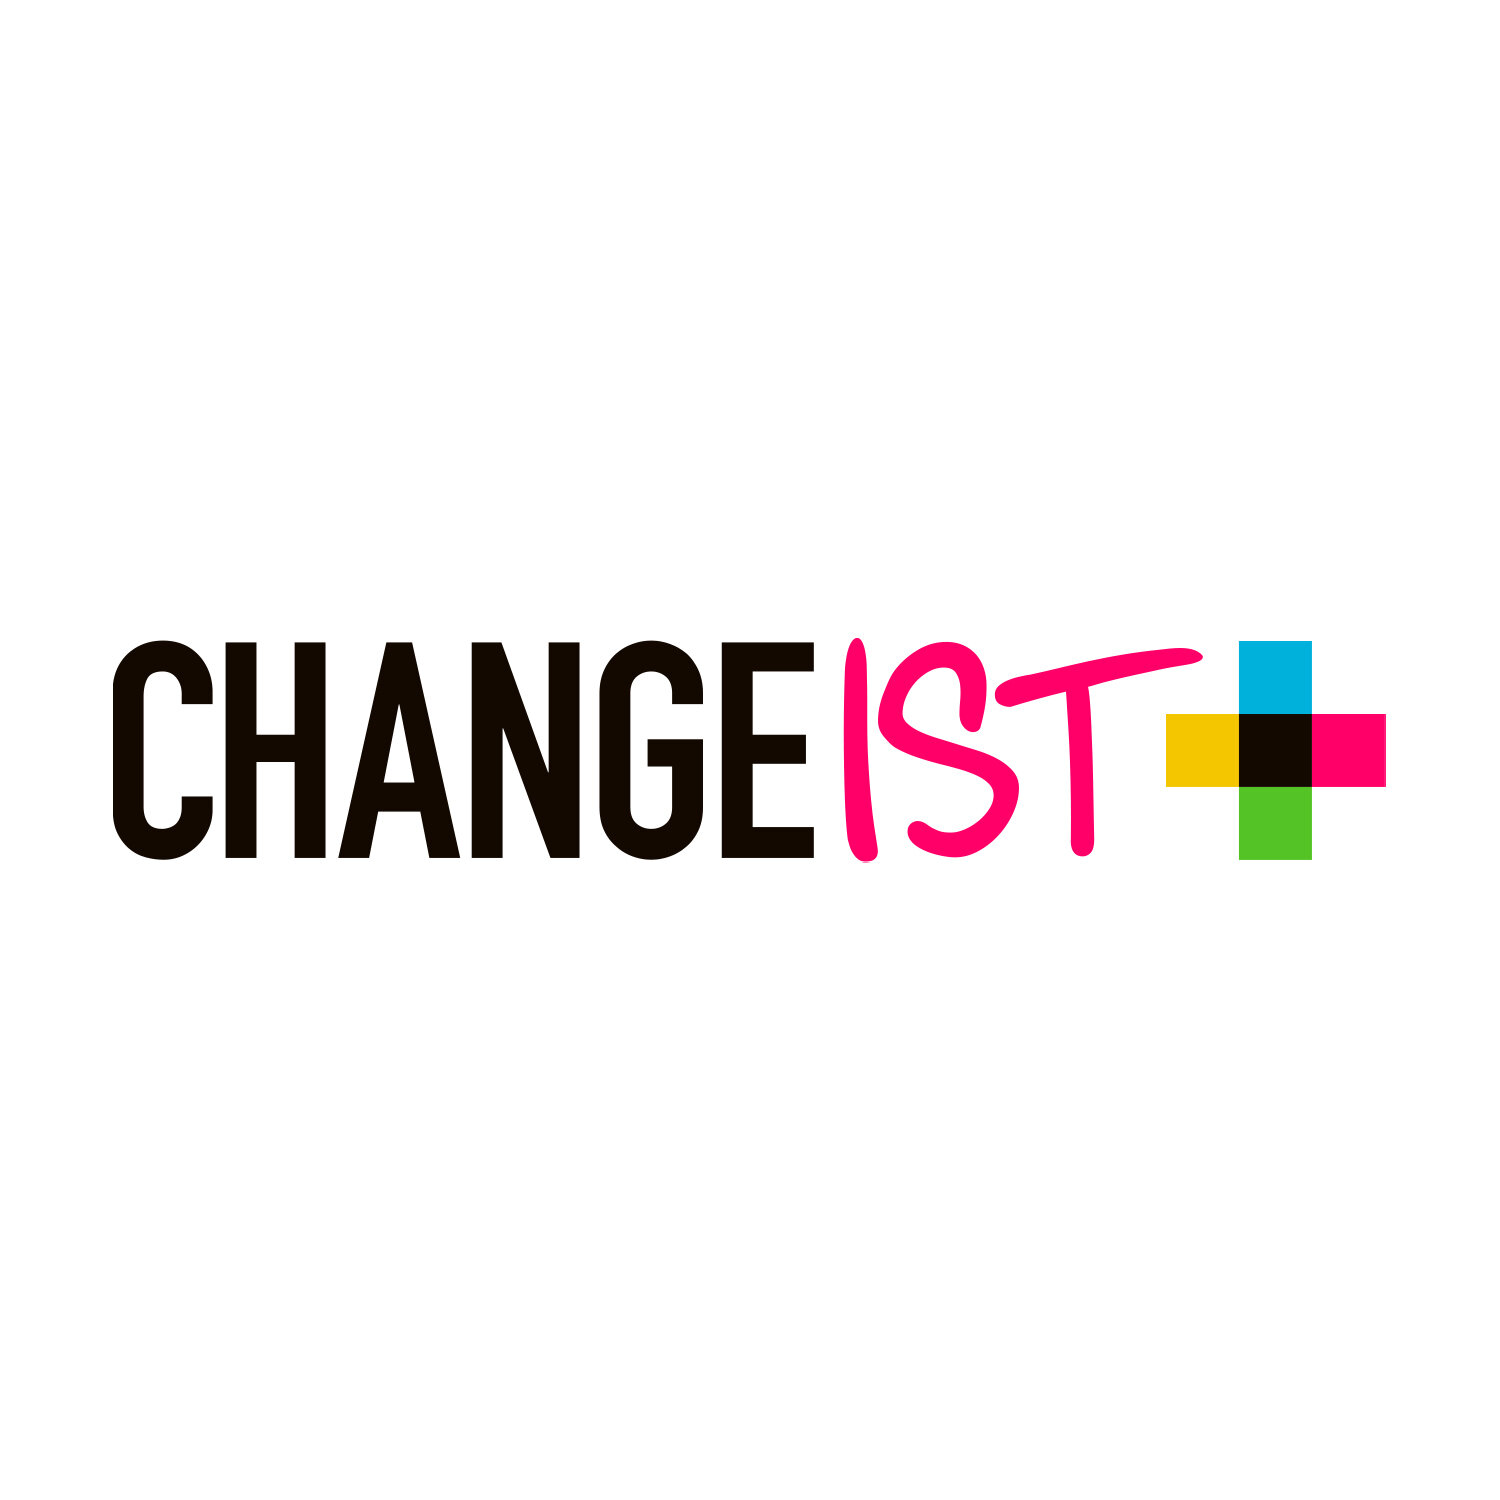 changeist-logo-1500px.jpg